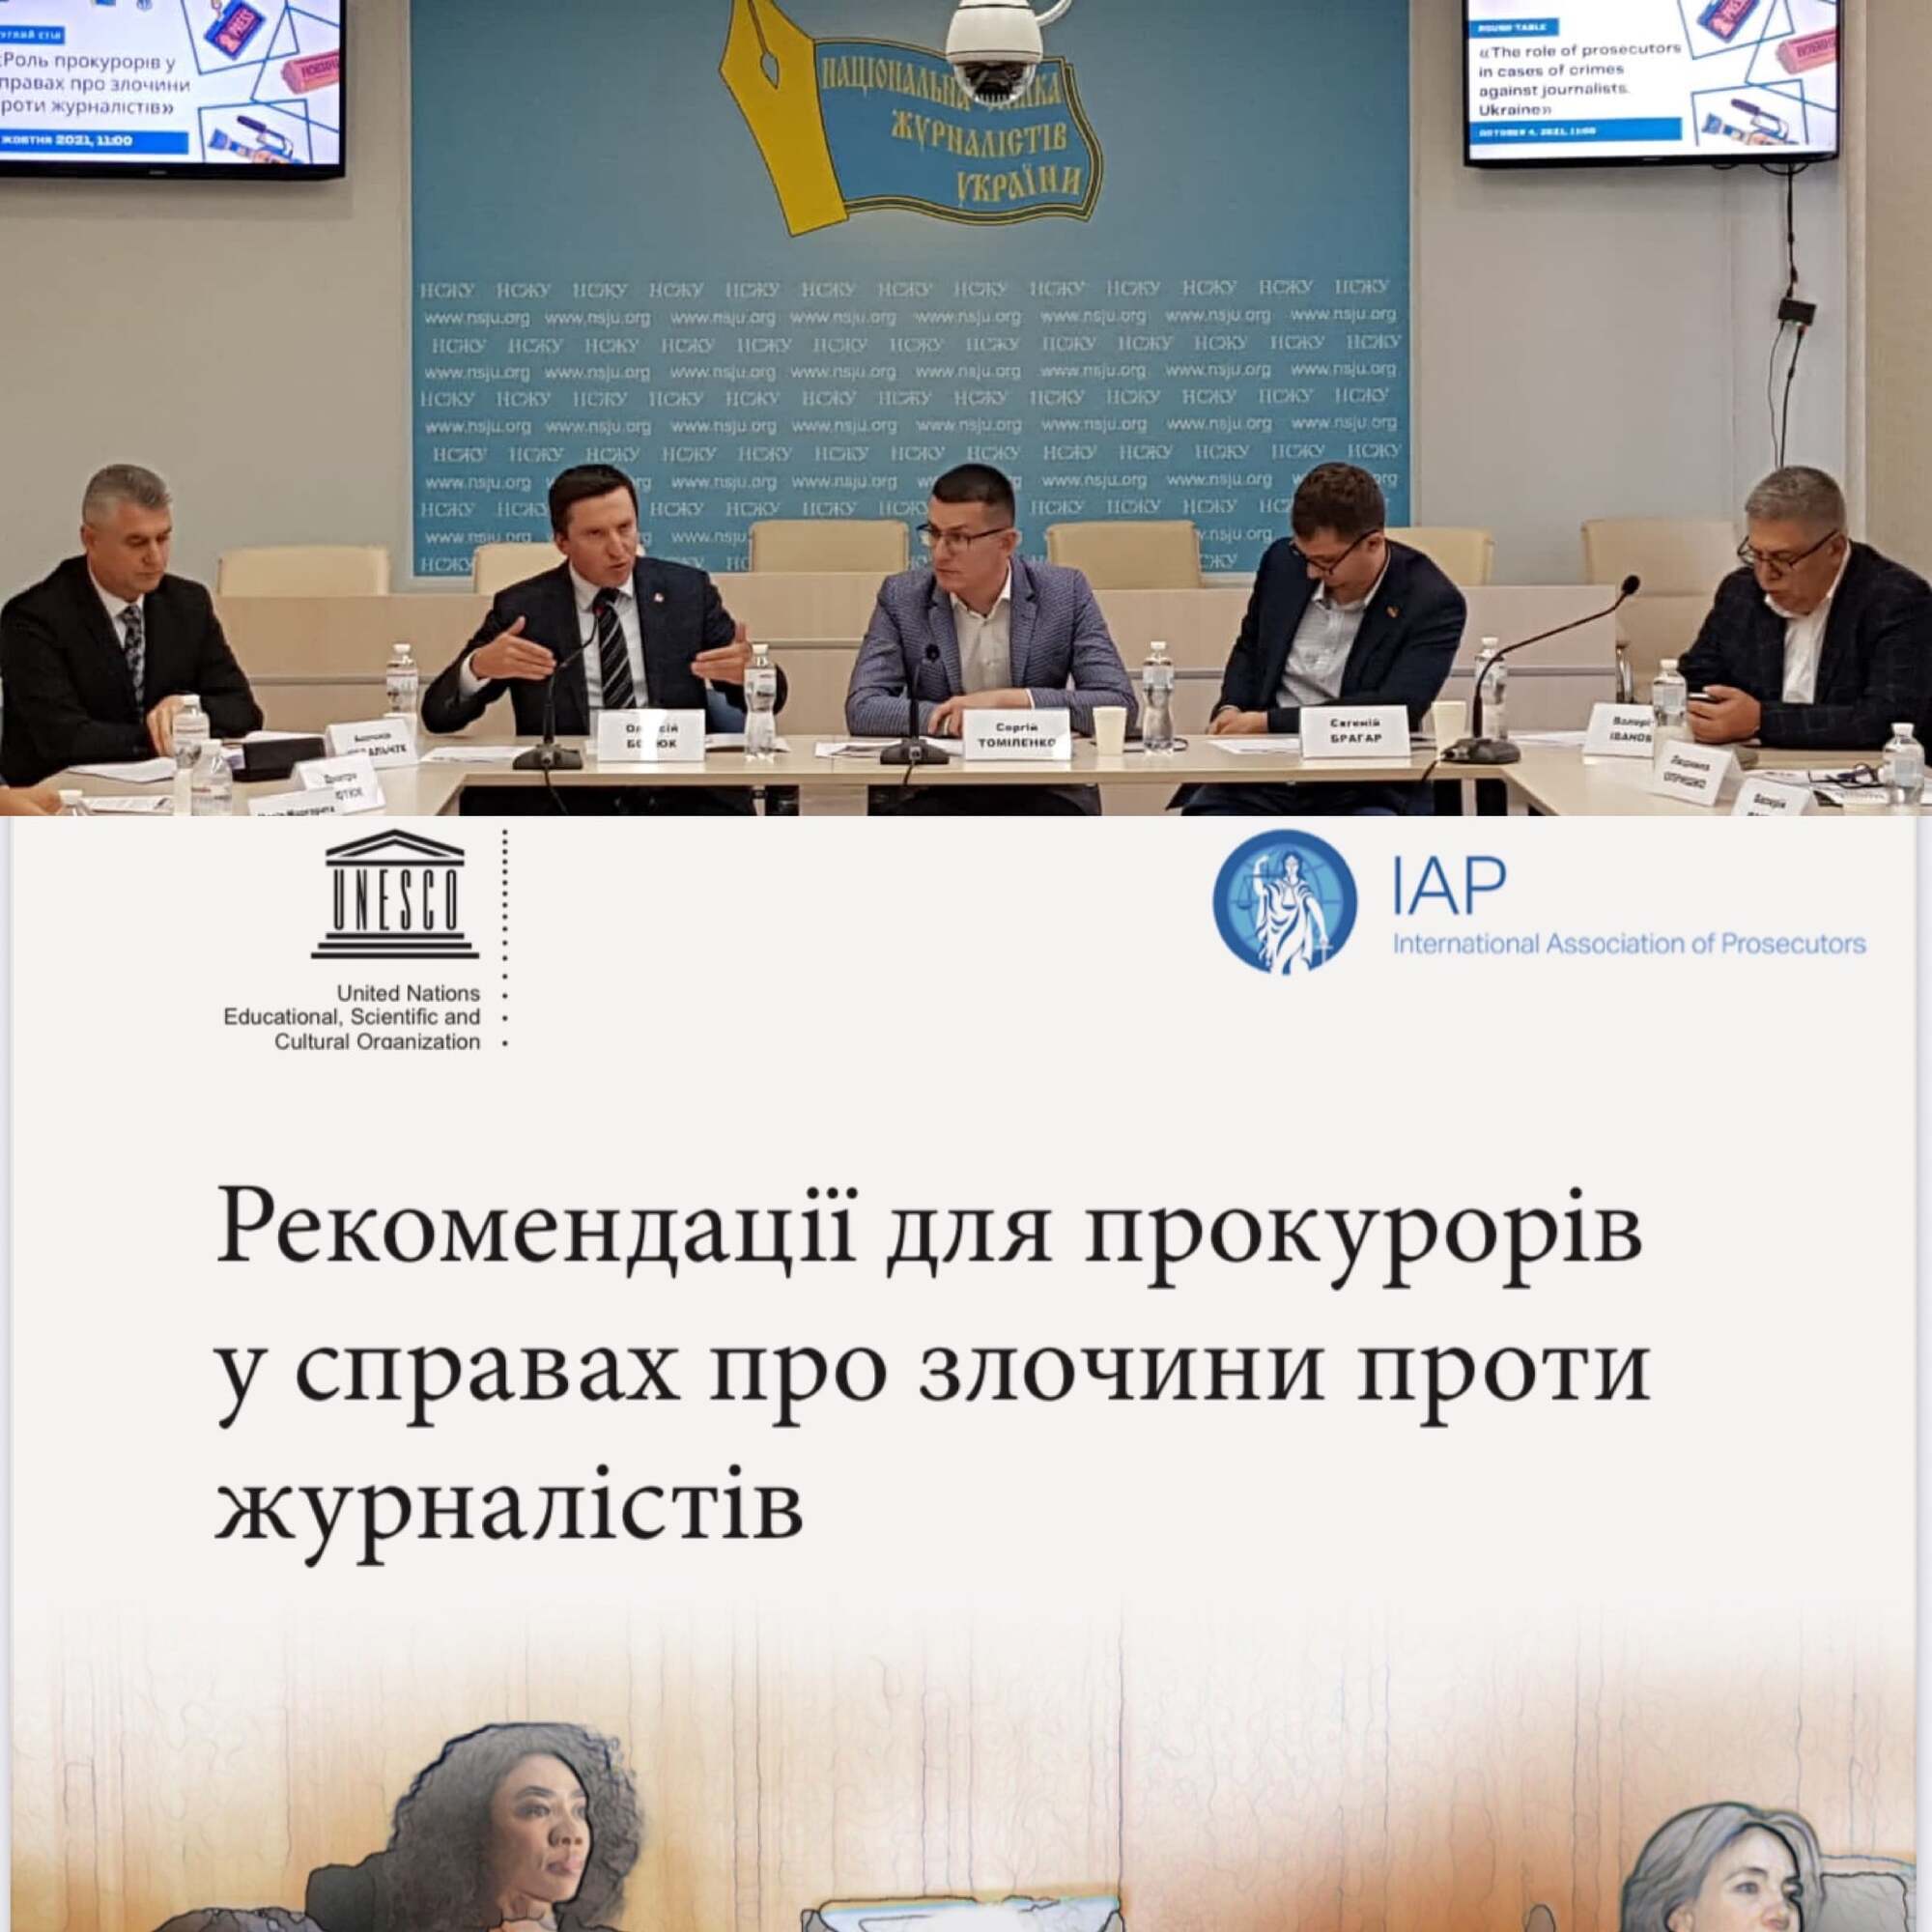 В НСЖУ відбувся круглий стіл "Роль прокурорів у справах про злочини проти журналістів"